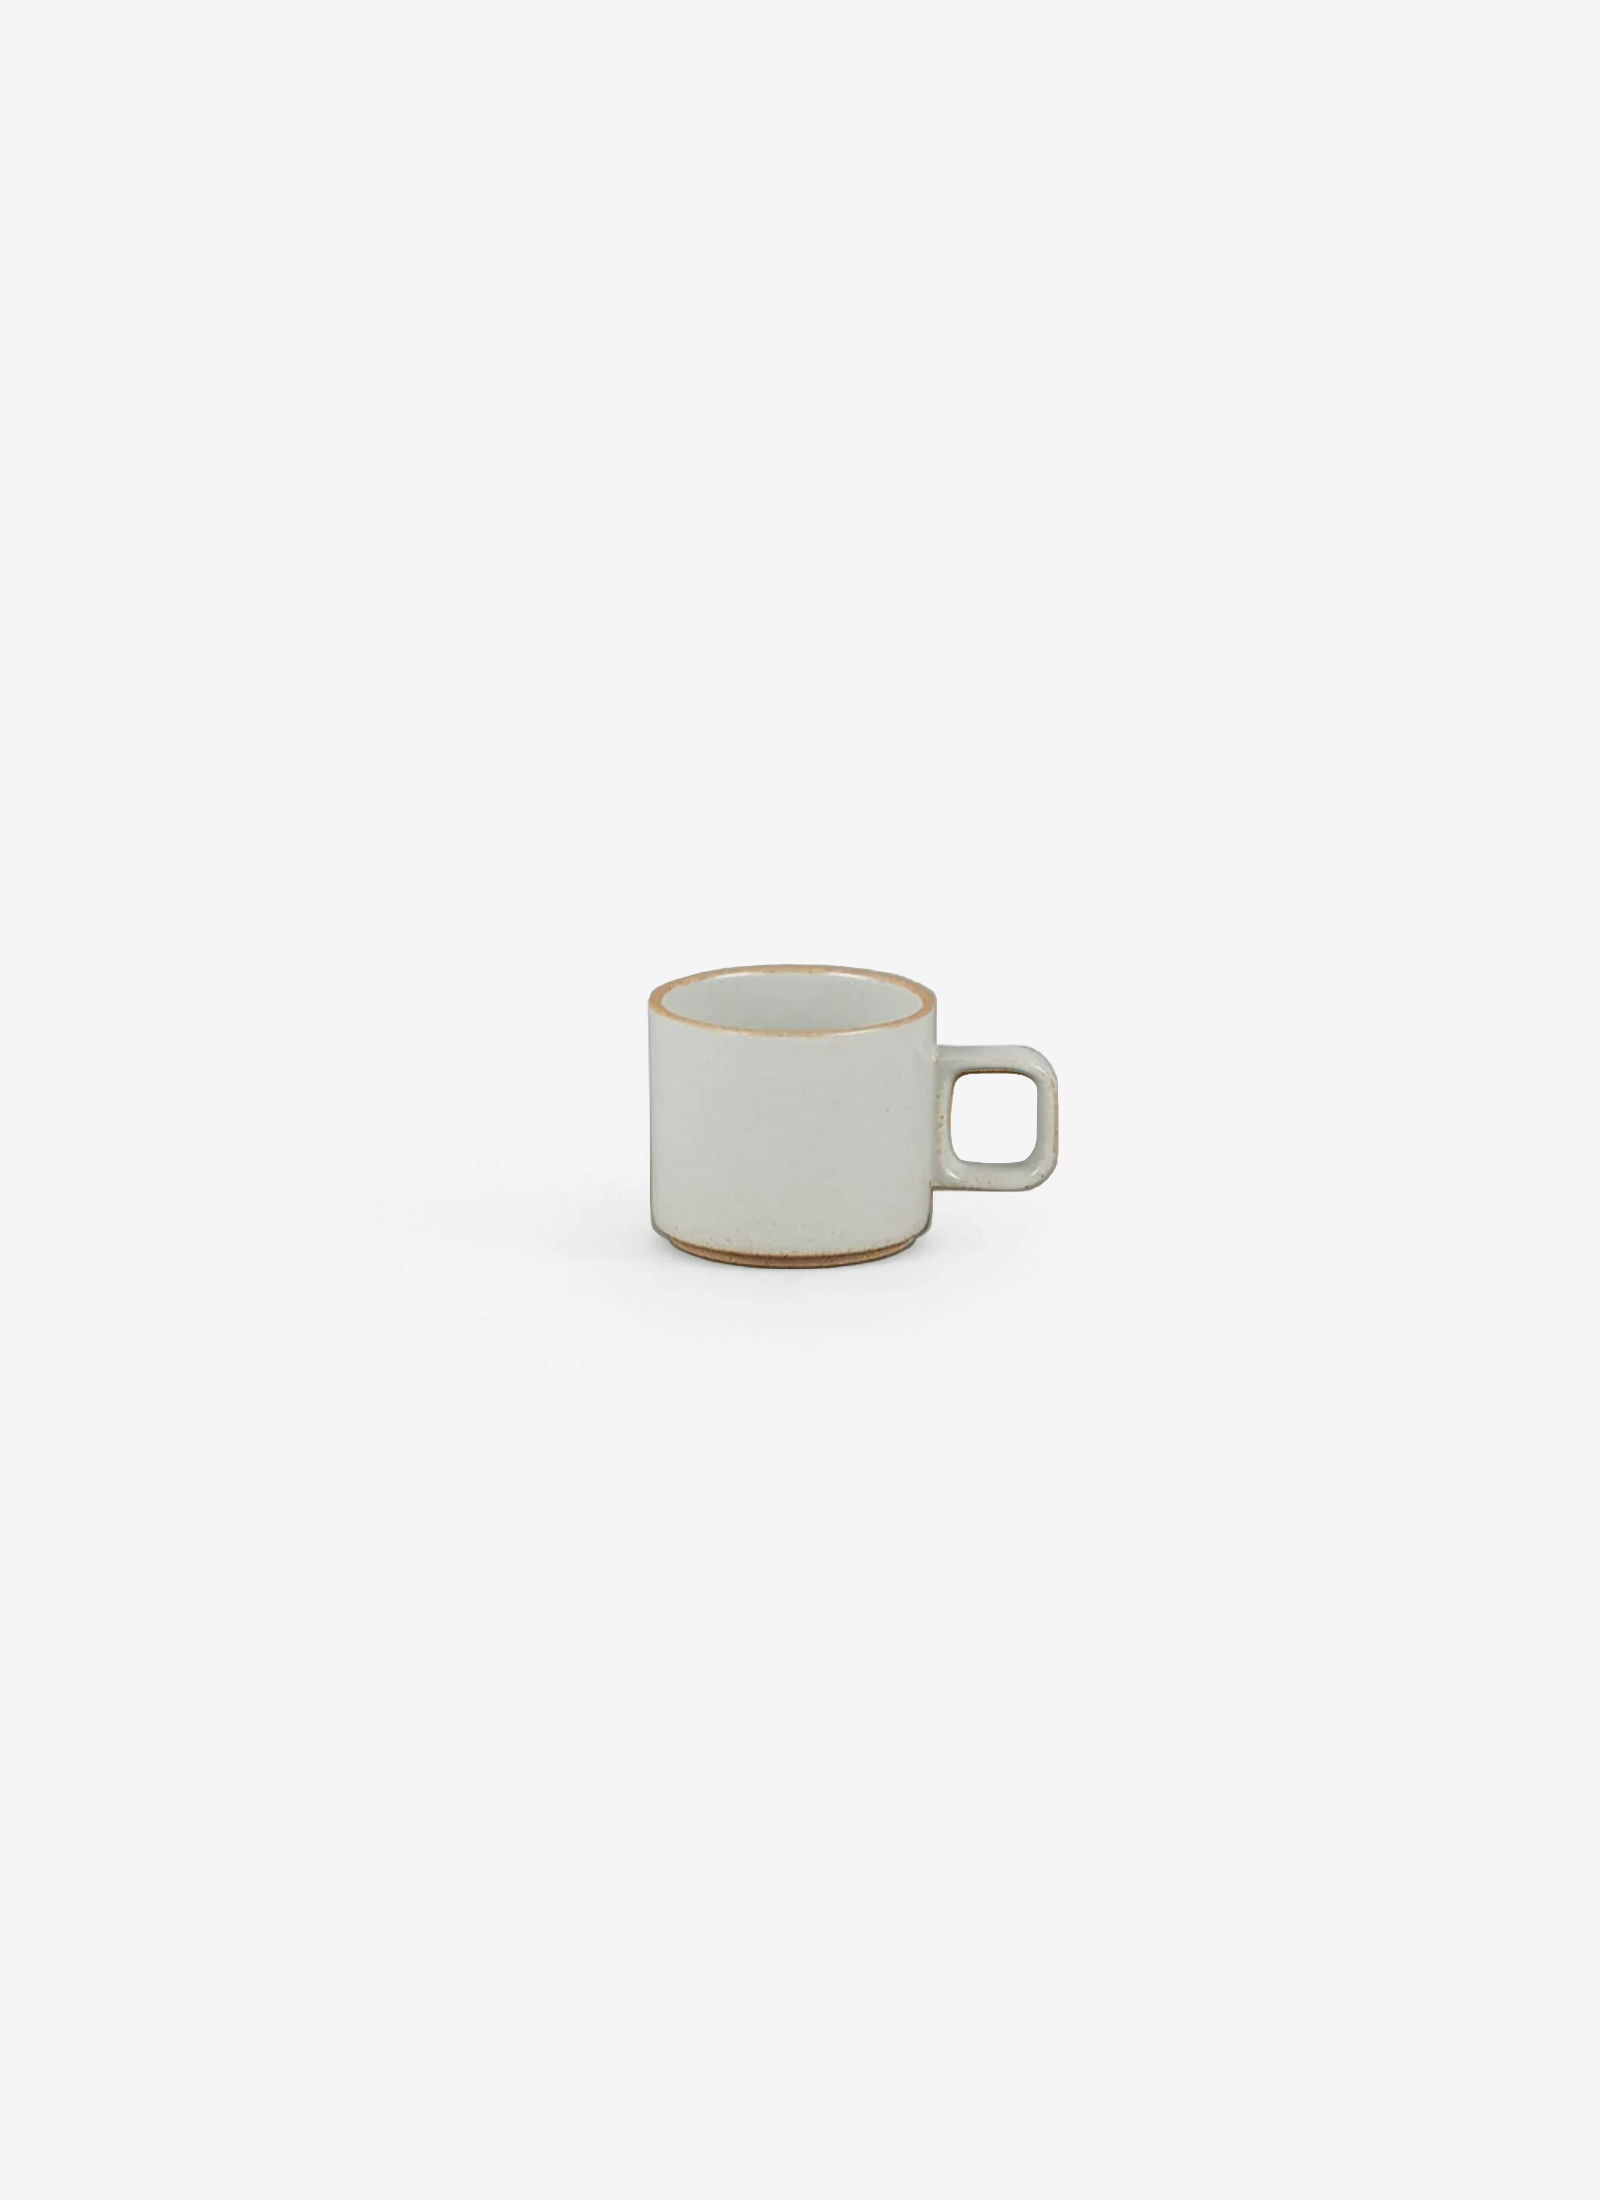 Small Grey Mugs - set of 4